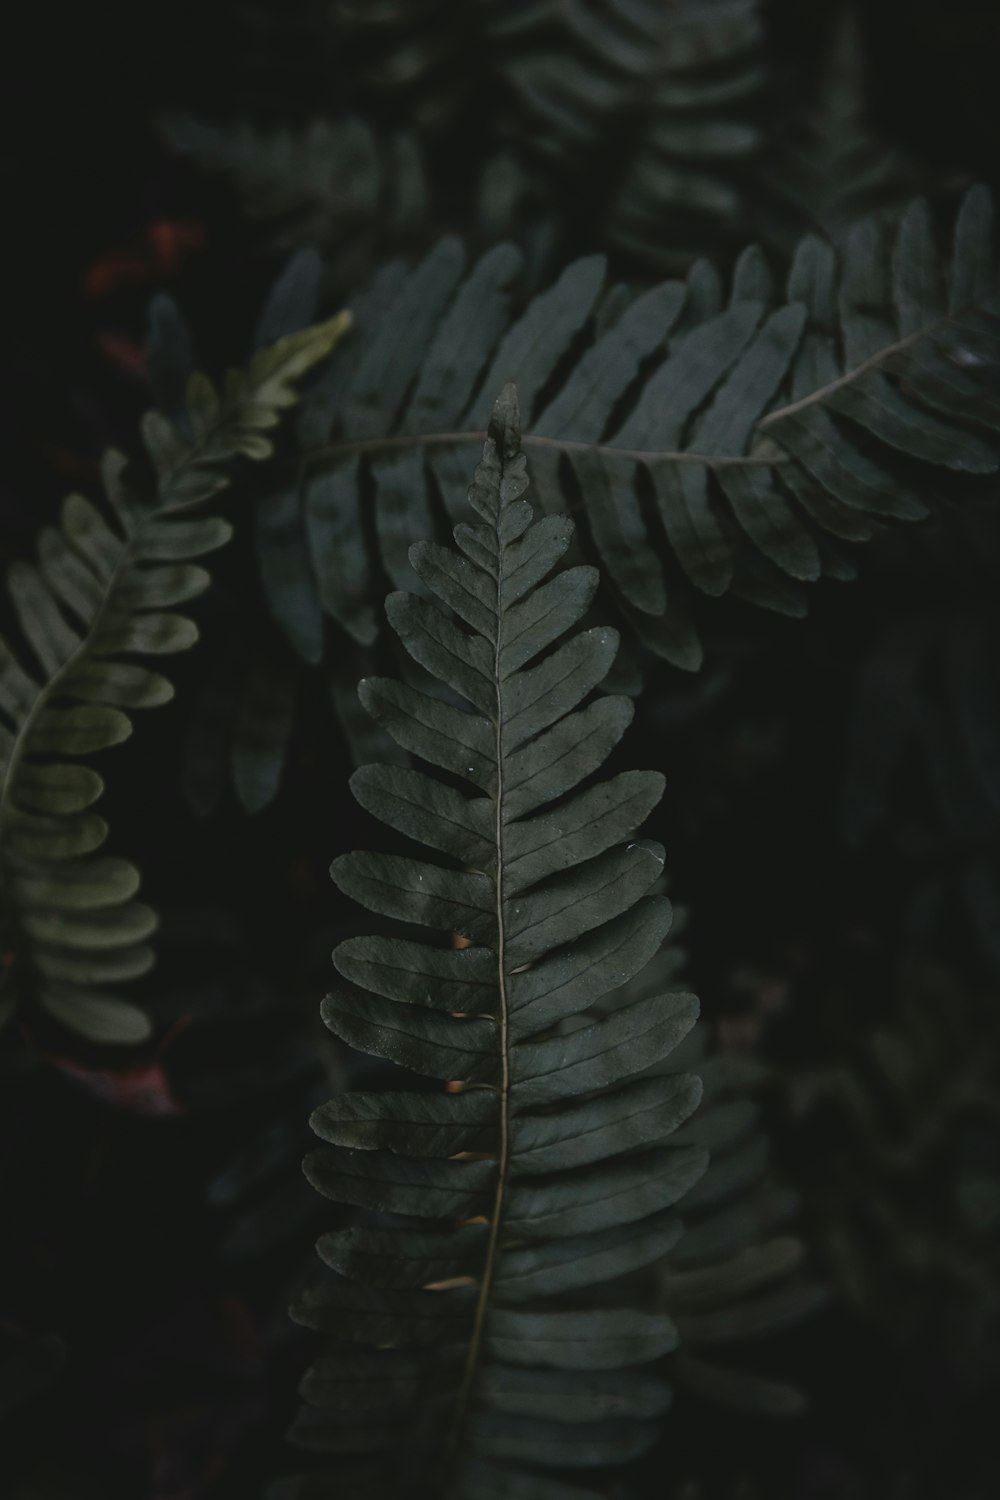 グリーンシダ植物のクローズアップ写真